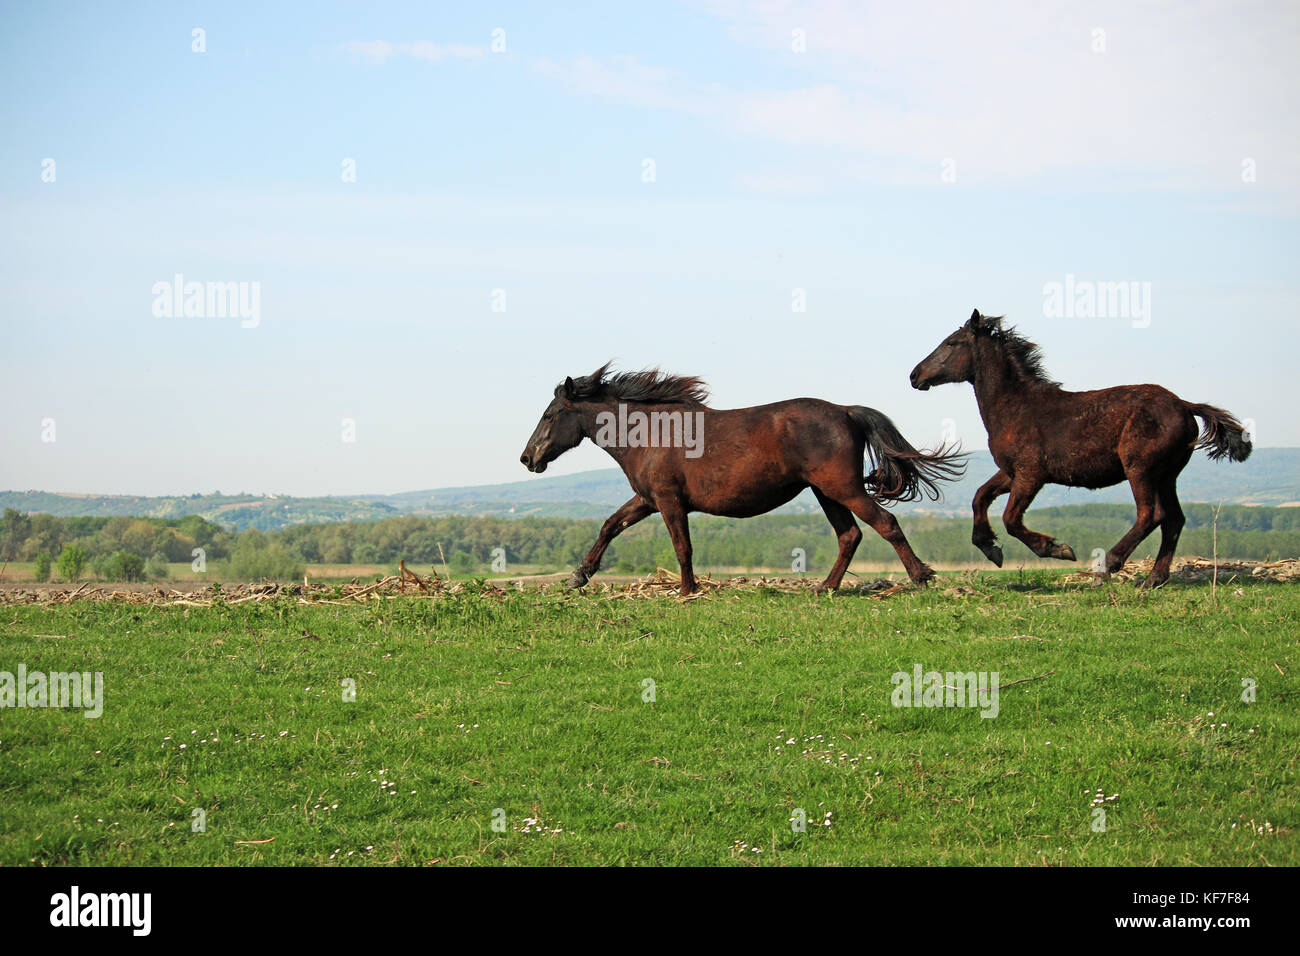 horses running on field Stock Photo